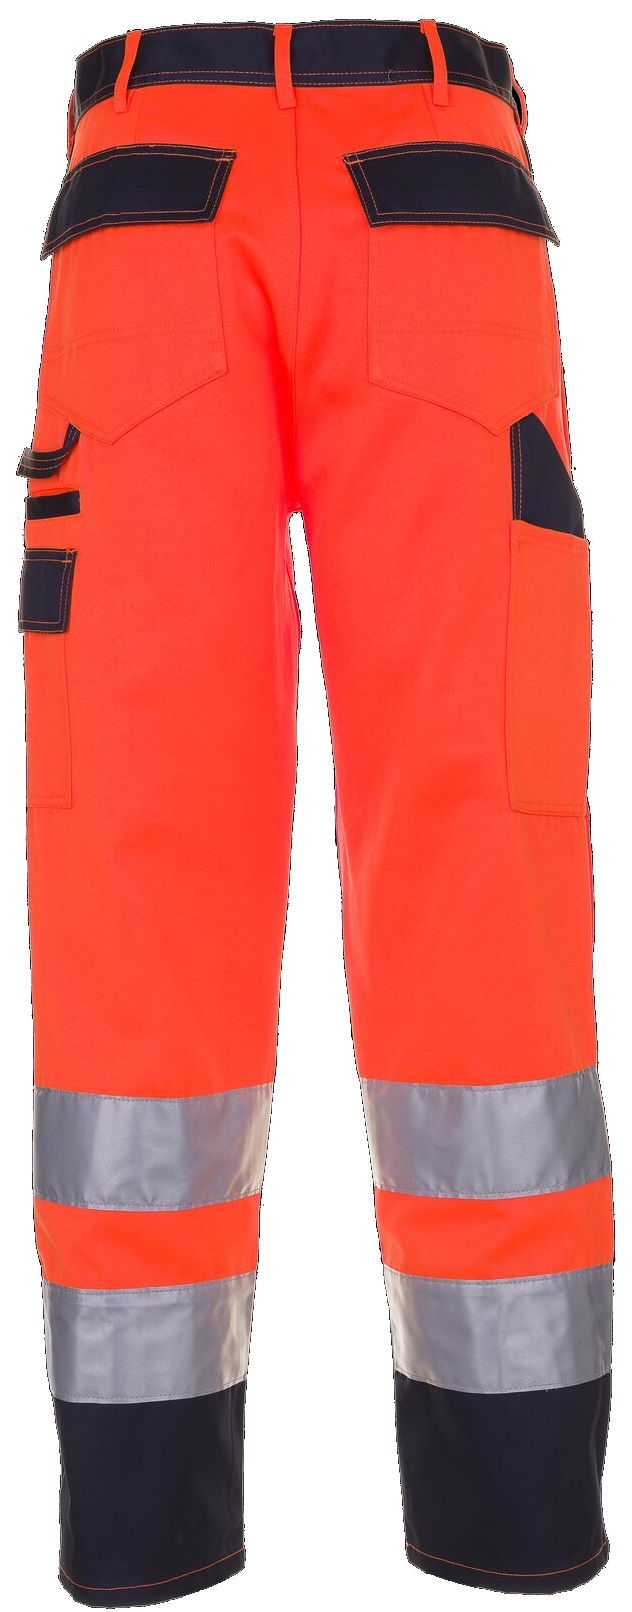 PLANAM-Warnschutz, Bundhose, 320 g/m², orange/marine
